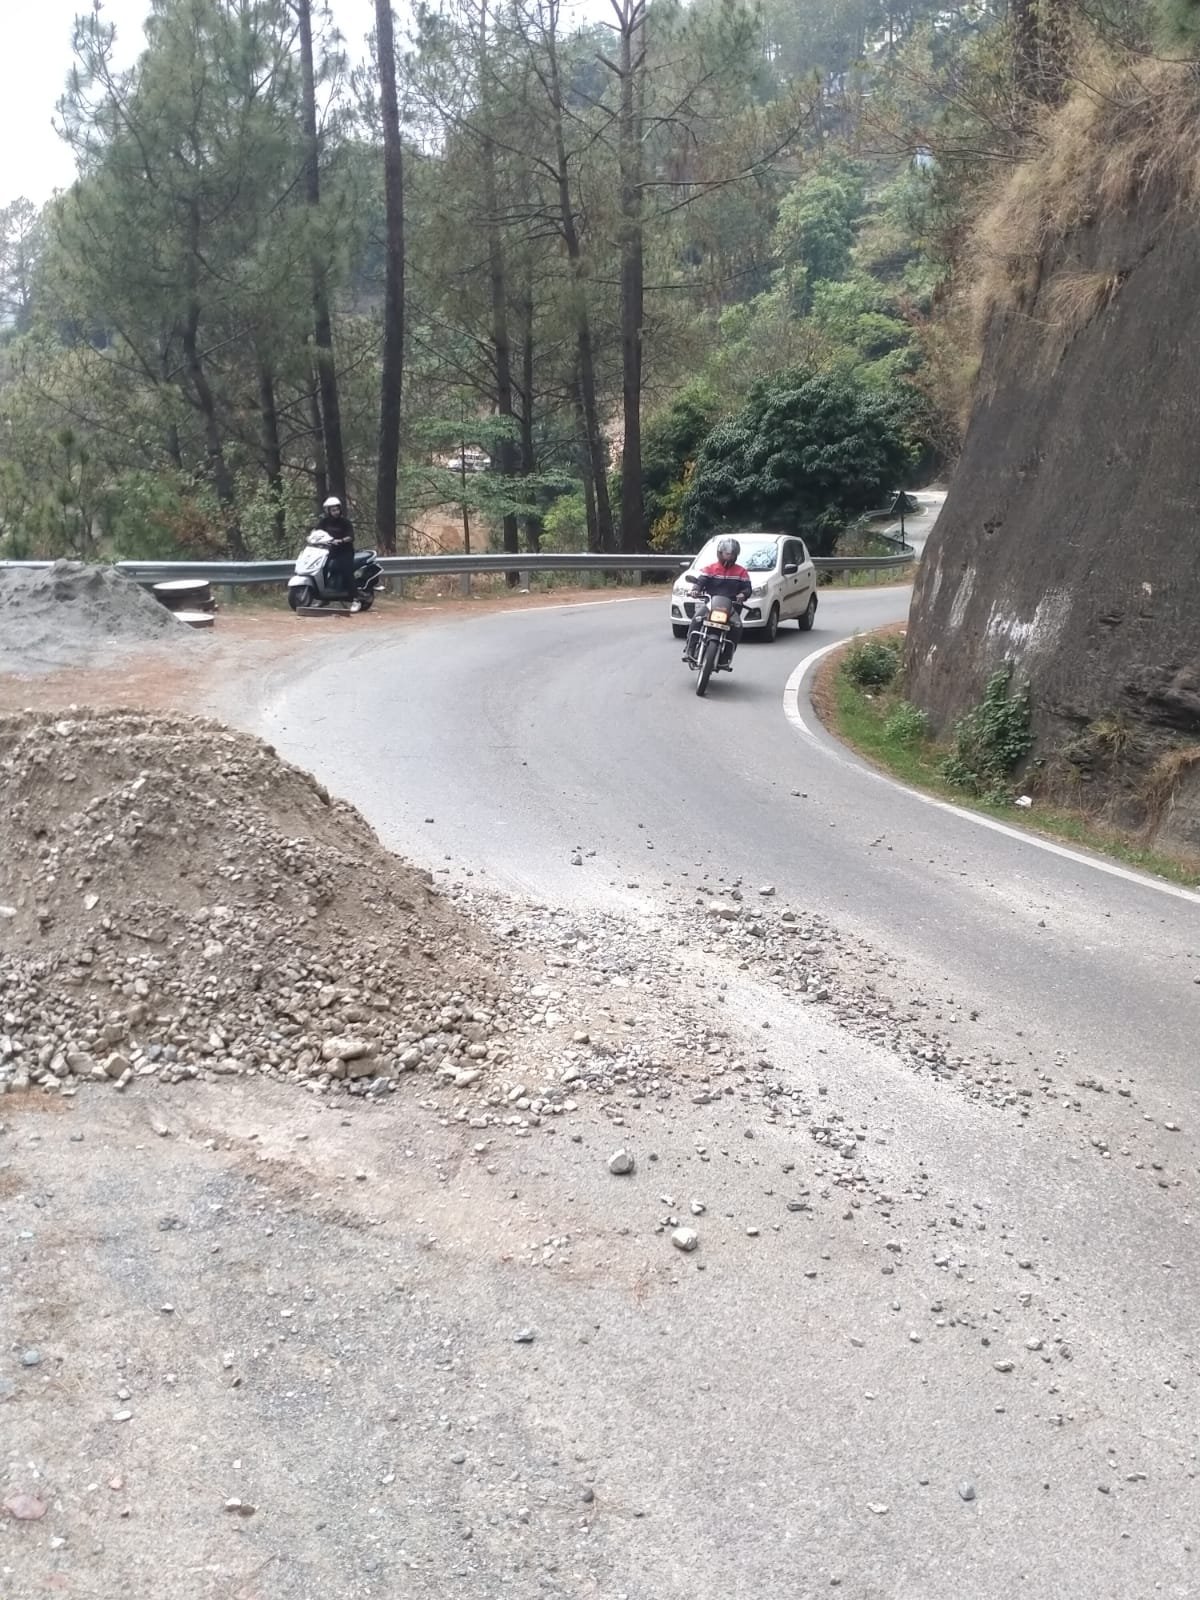 अल्मोड़ा: पाण्डेखोला में निर्माणाधीन सीवर लाइन प्लांट के ऊपर रोड में डाला मलवा, एसडीएम को दिया पत्र, की यह यह मांग